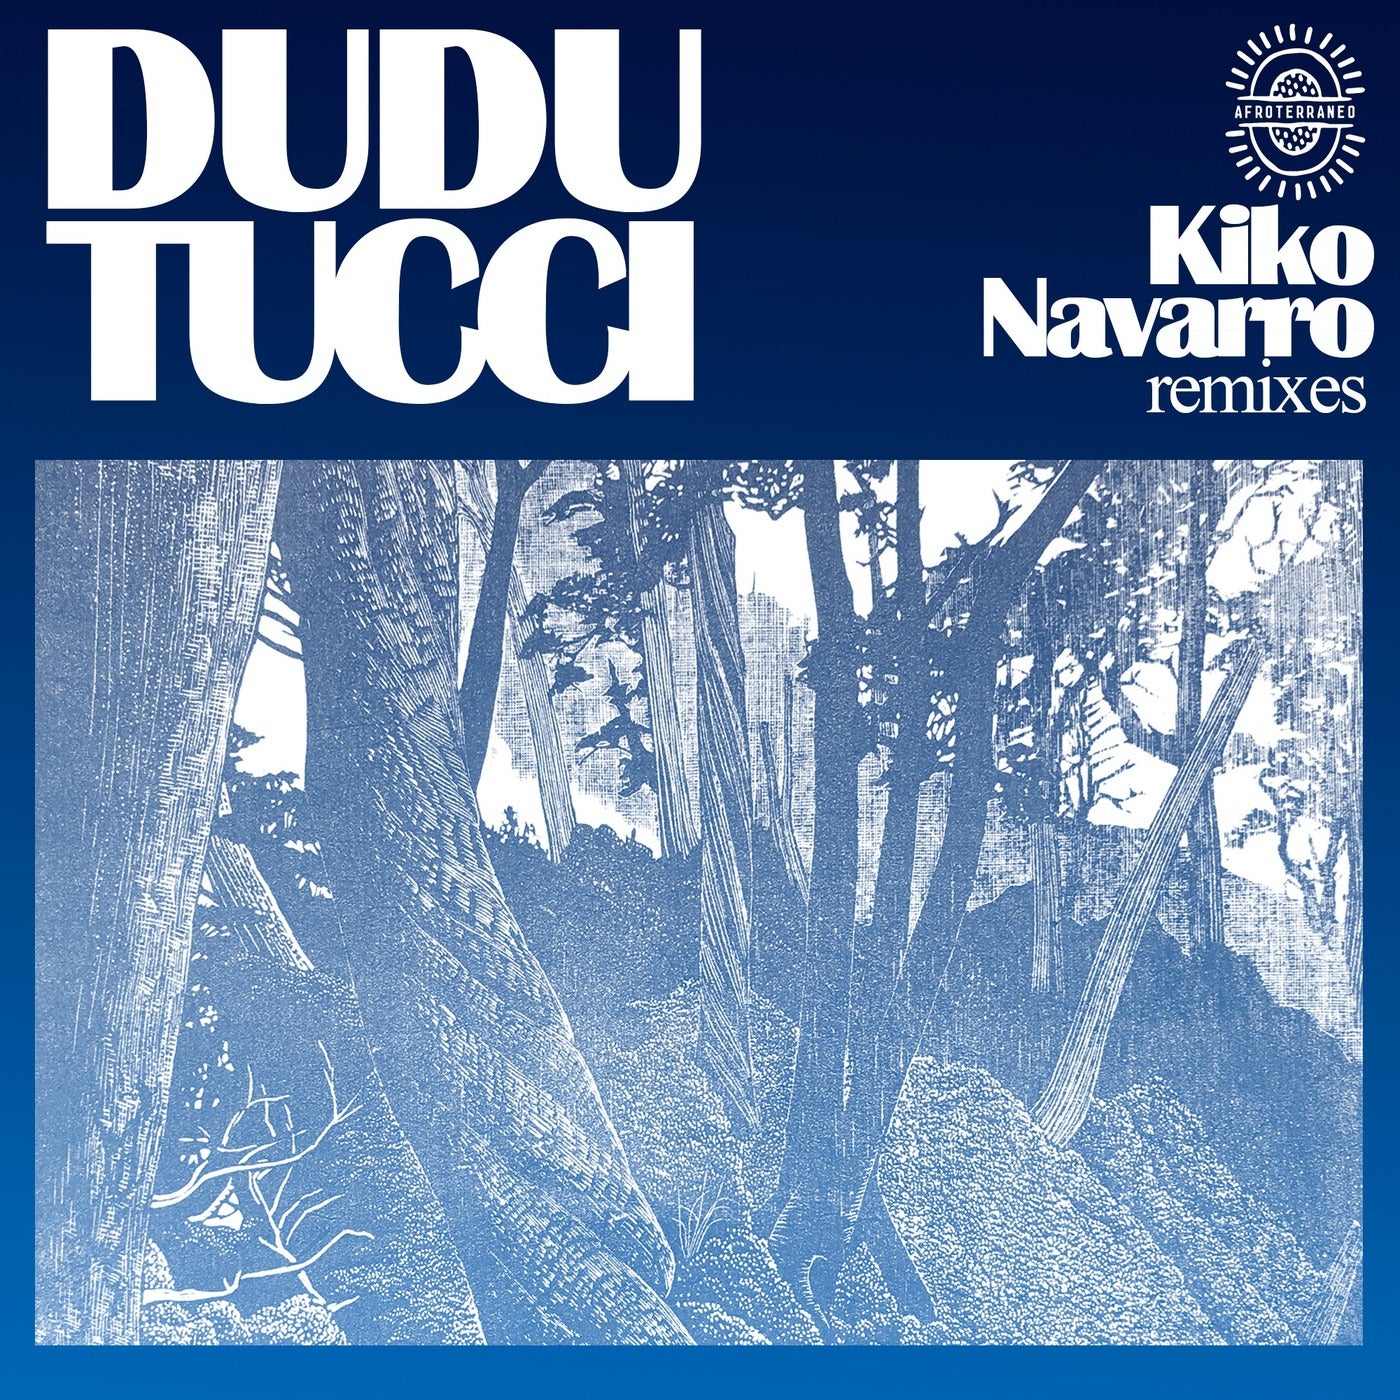 Download Dudu Tucci - Kiko Navarro Remixes on Electrobuzz